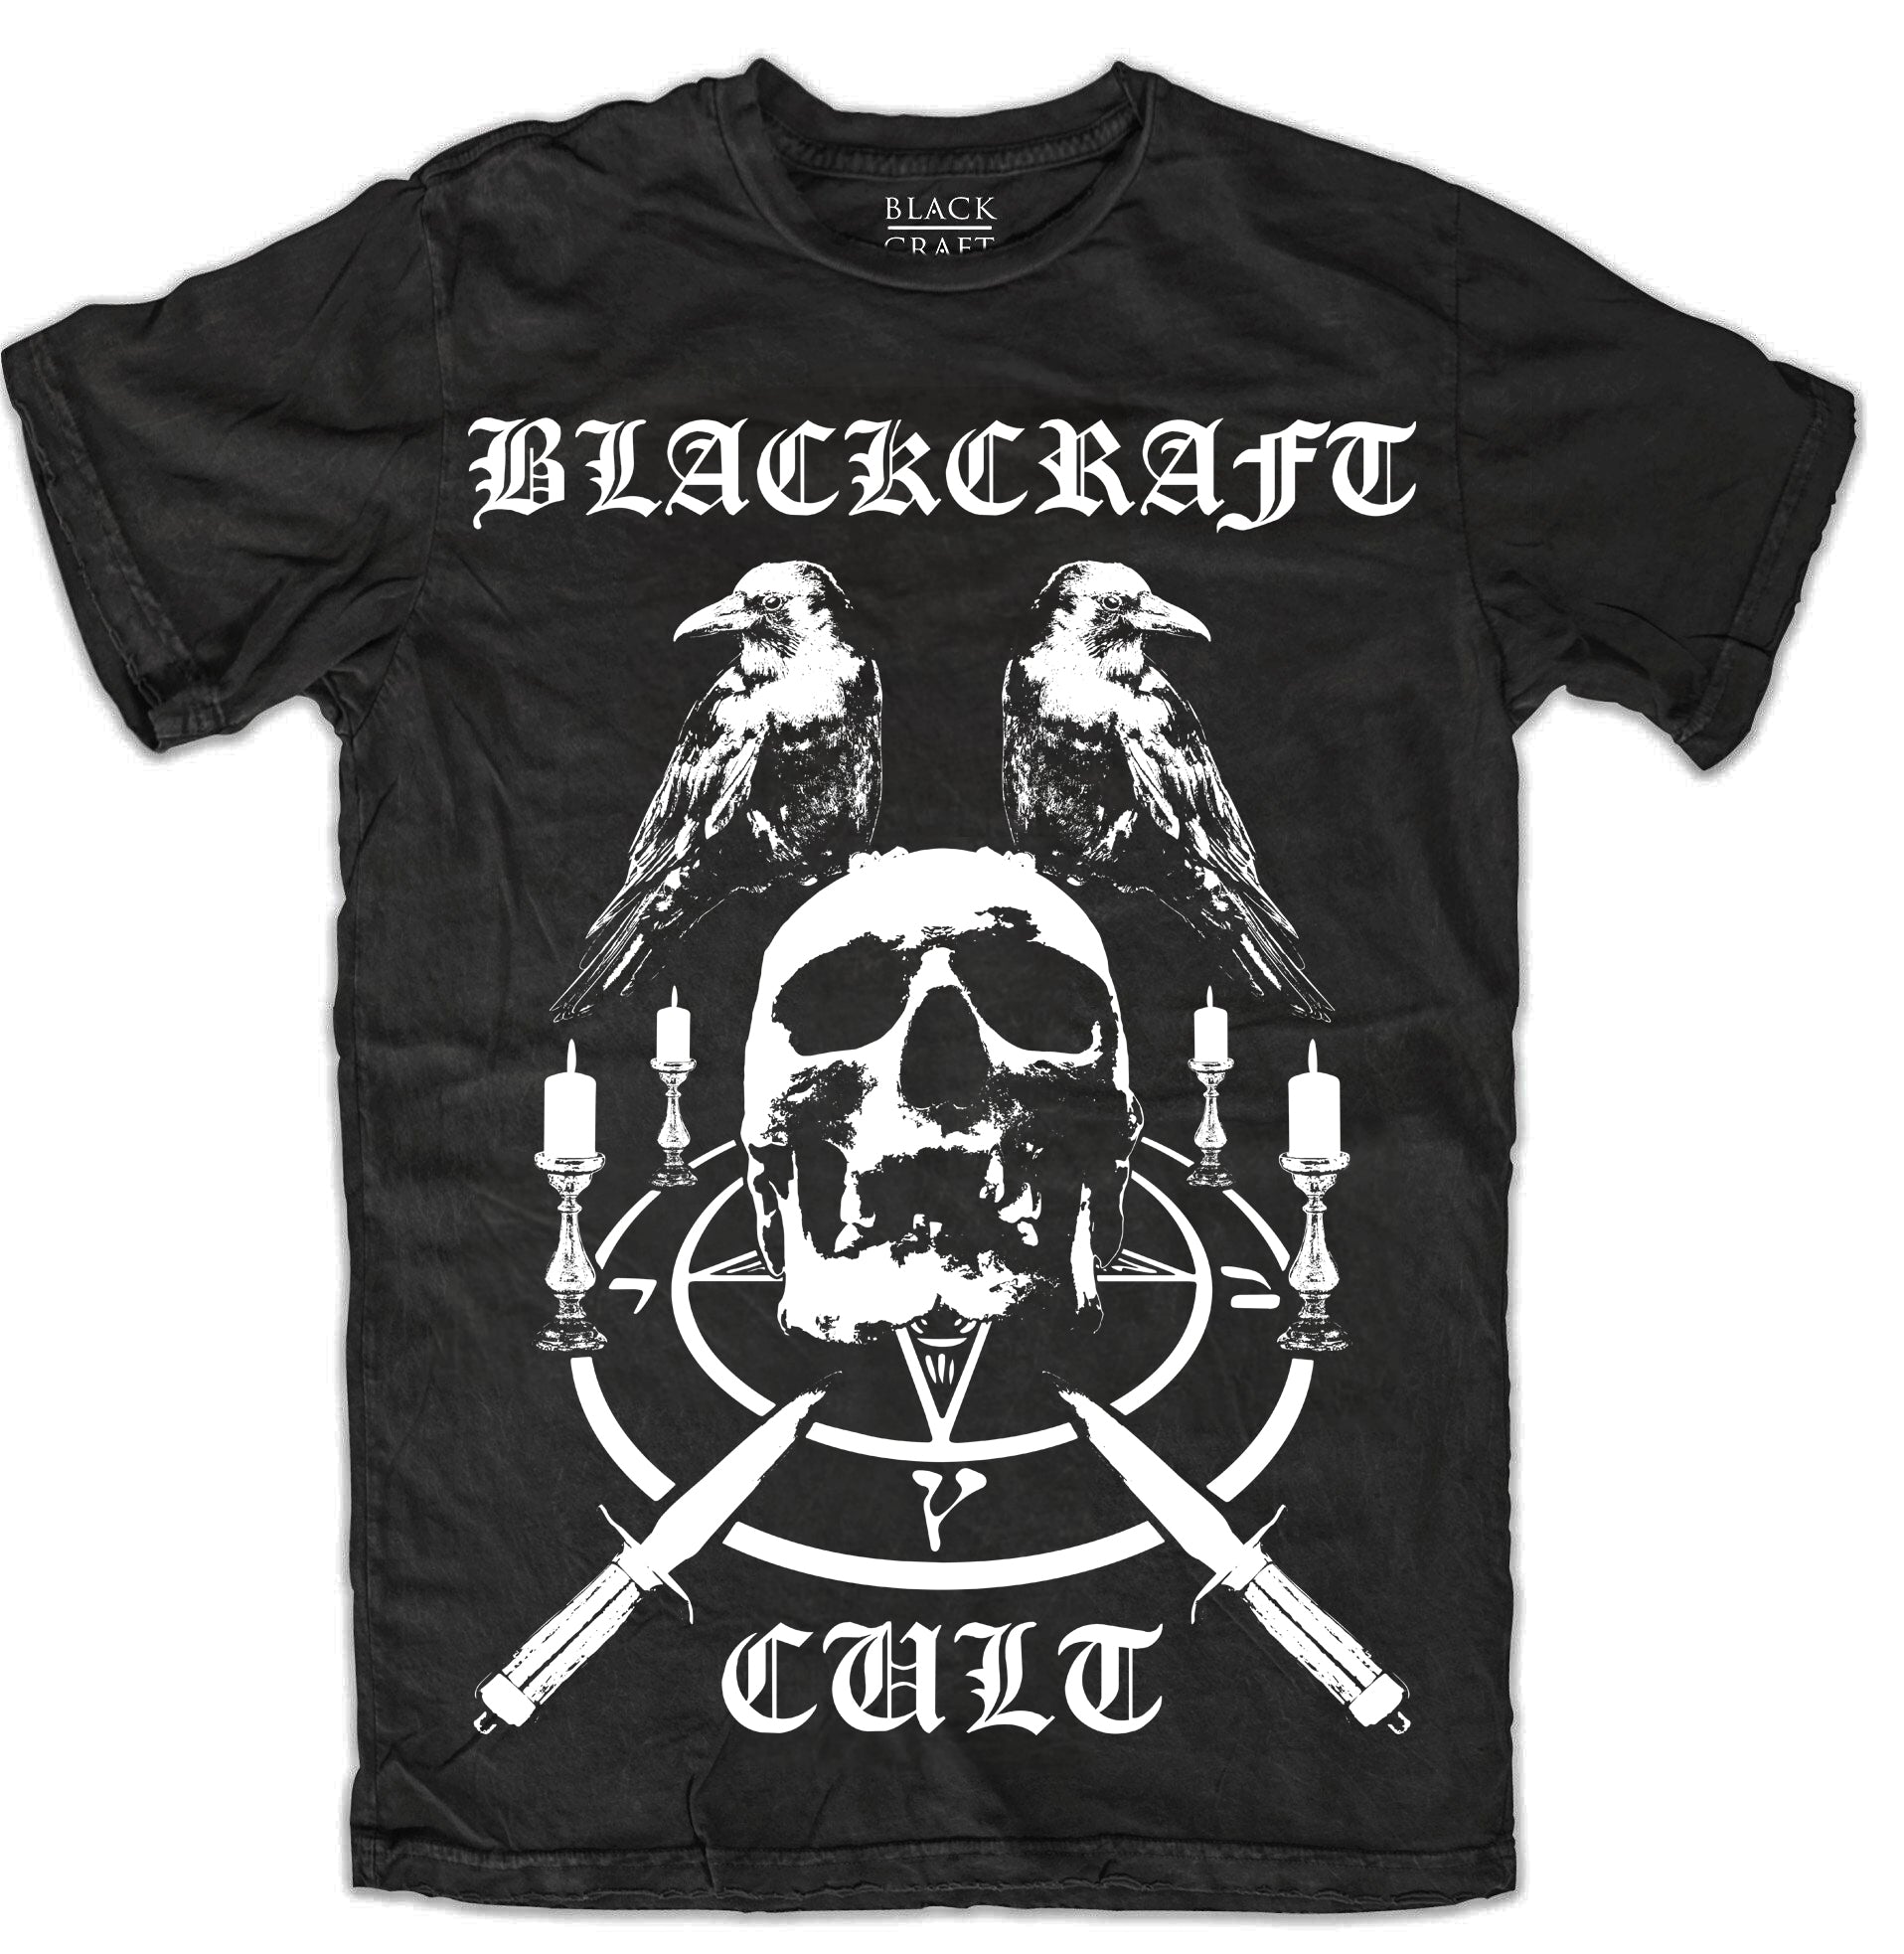 Altar – Blackcraft Cult